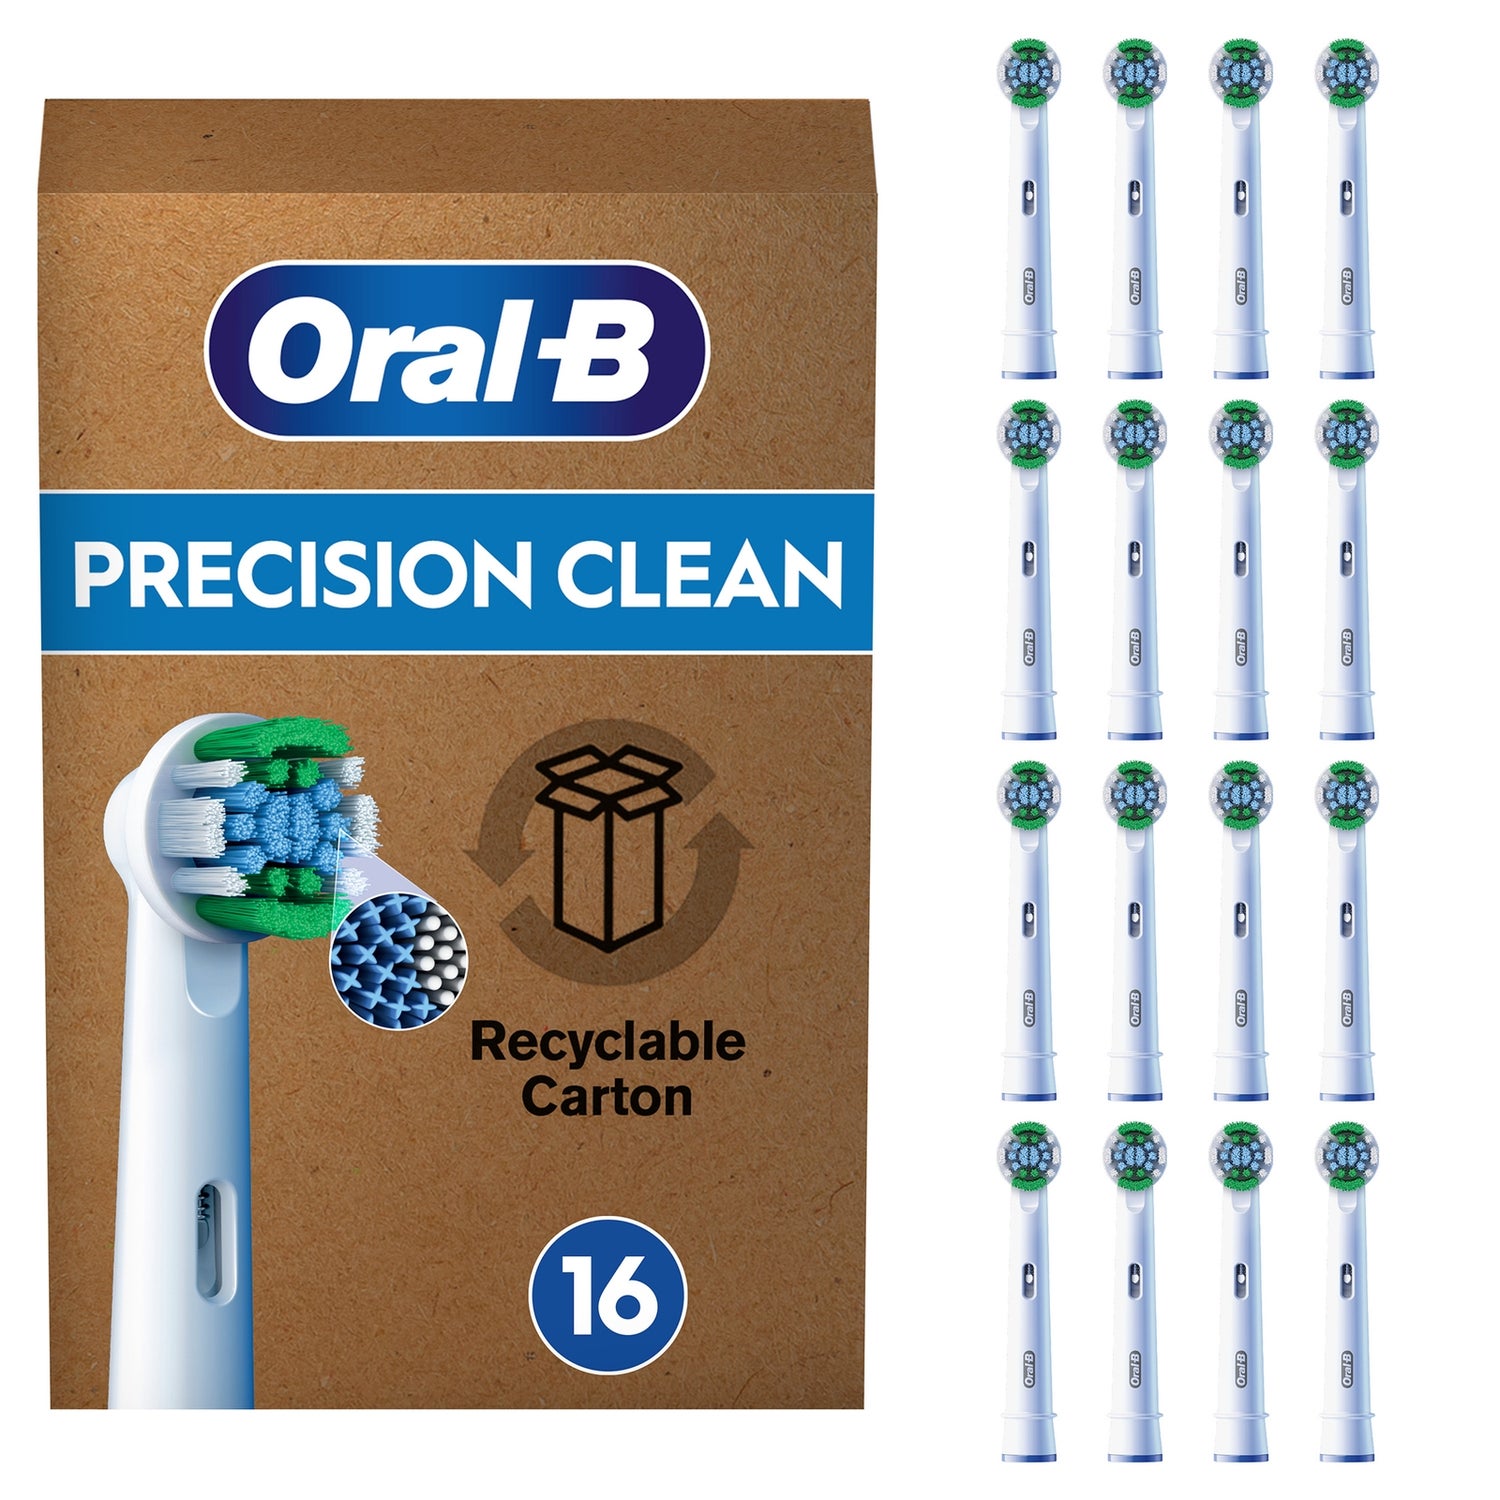 X-förmige Pro Zahnbürste, Aufsteckbürsten Verpackung, DE briefkastenfähige Clean für elektrische Precision | 16 Borsten, Oral-B Oral-B Stück